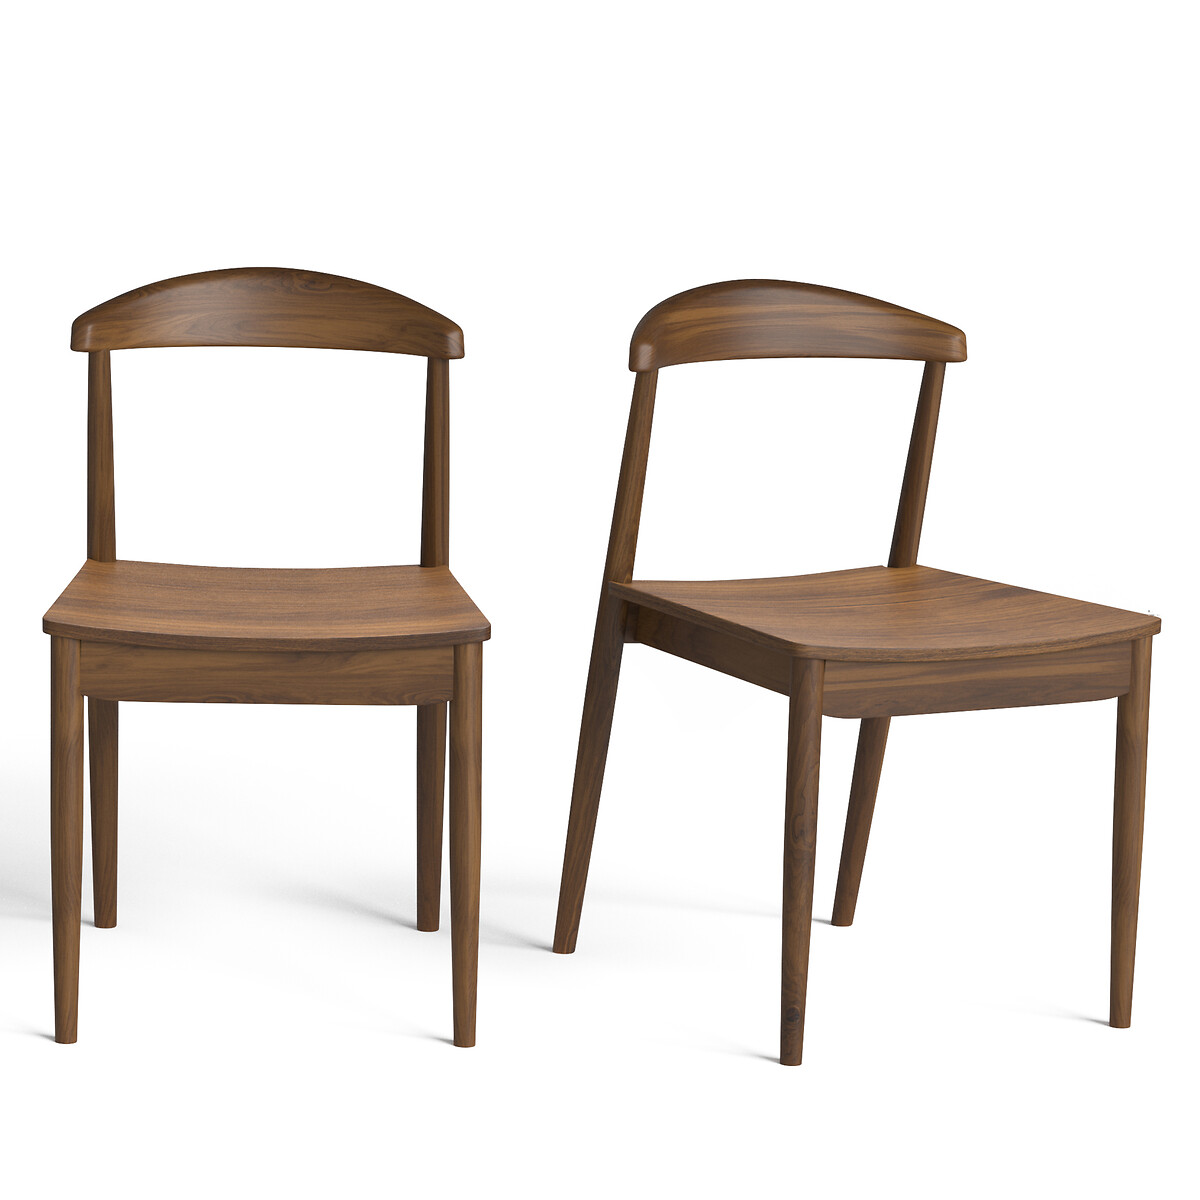 Комплект из 2 стульев, Galb La Redoute комплект из 2 каштановый